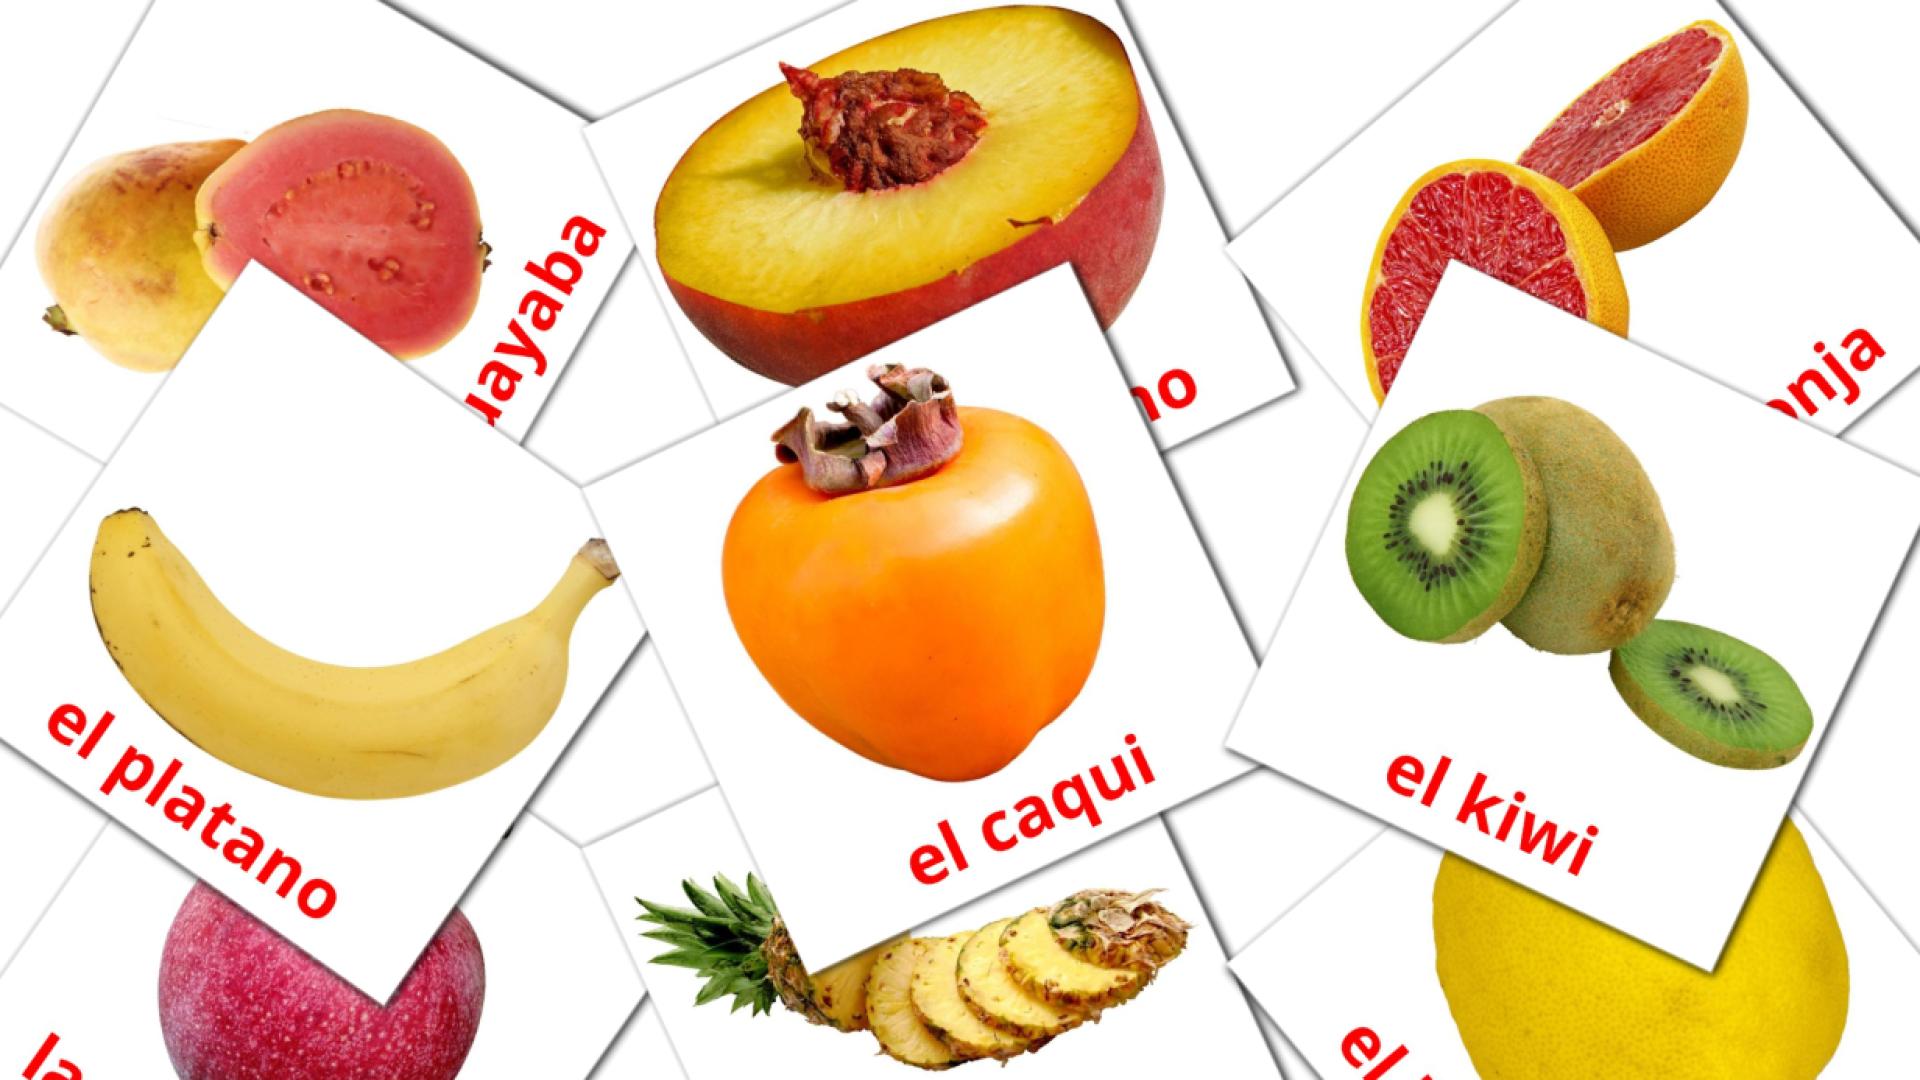 Bildkarten für Frutas